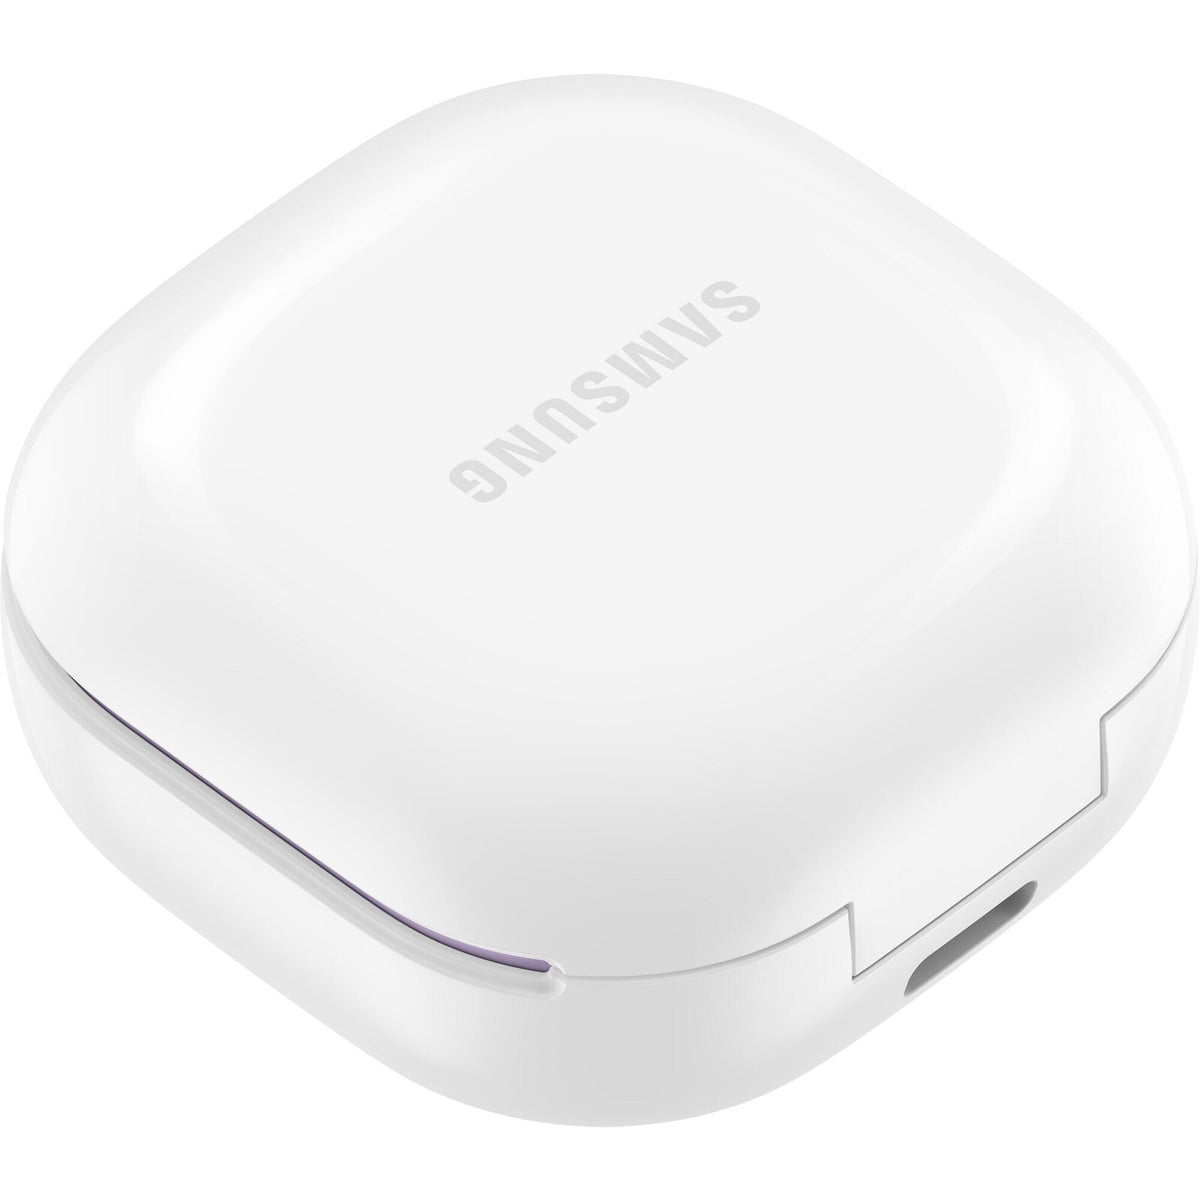 True Wireless sluchátka Samsung Galaxy Buds2, fialová